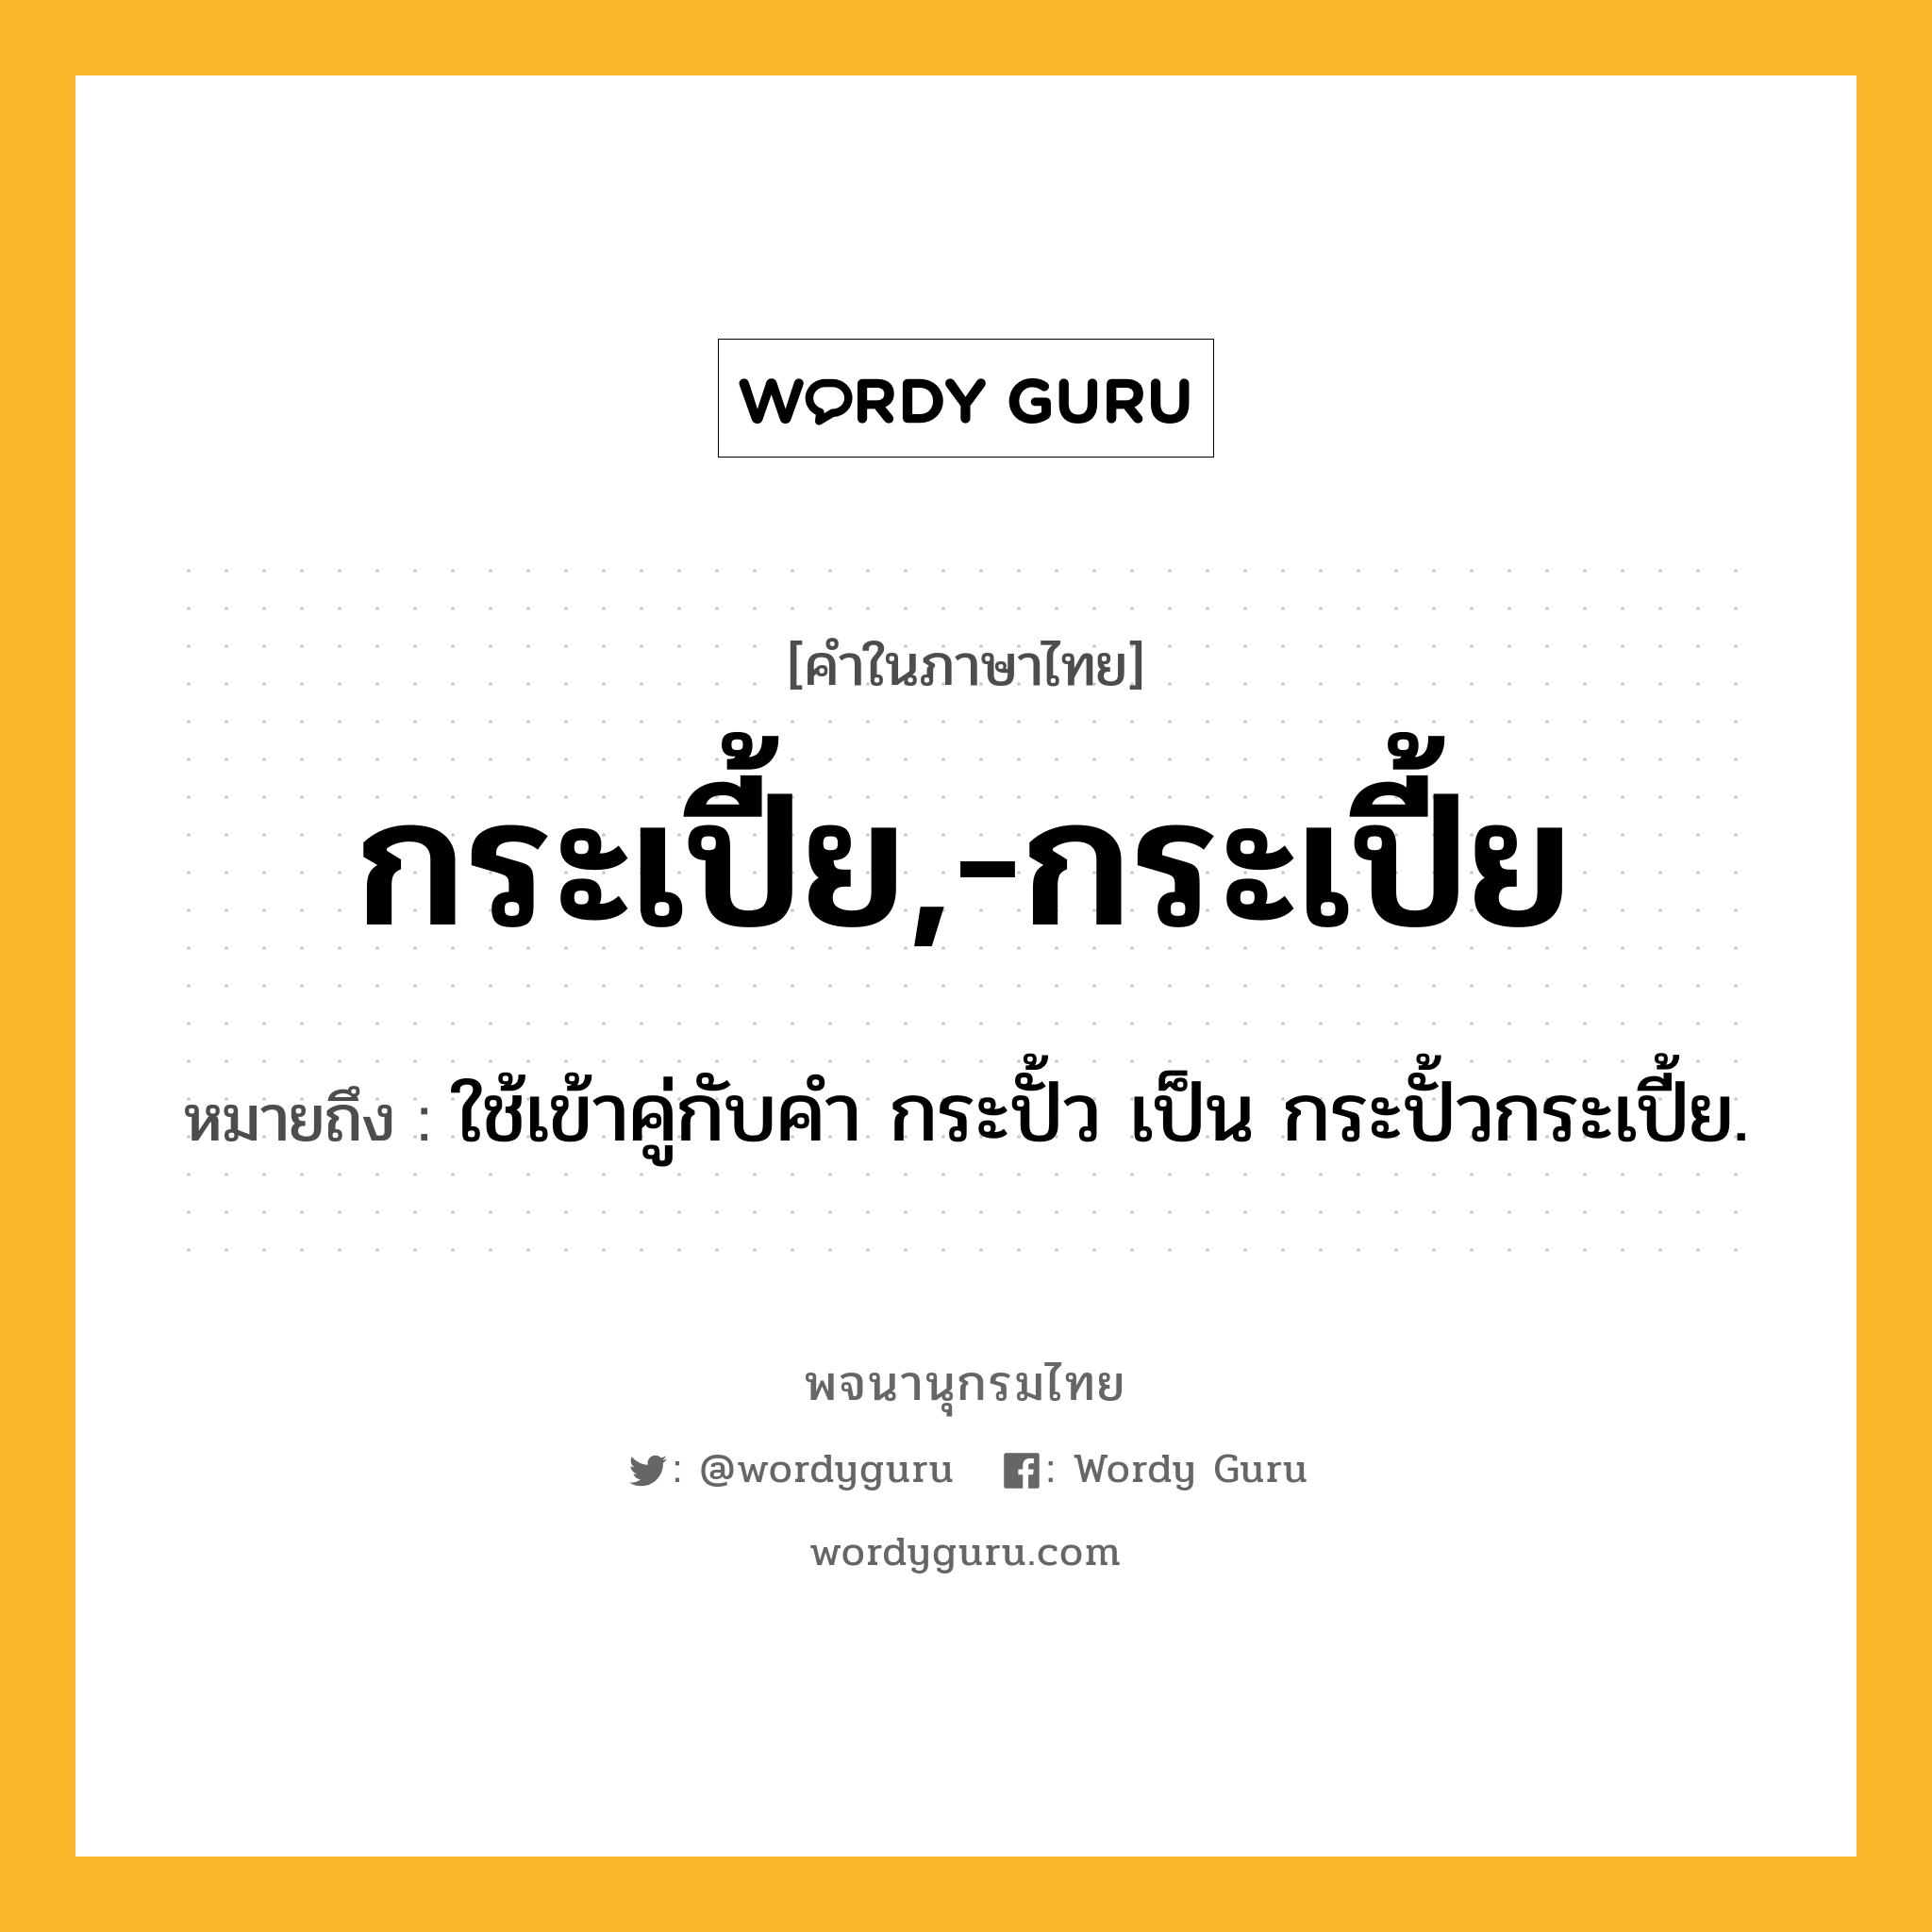 กระเปี้ย,-กระเปี้ย หมายถึงอะไร?, คำในภาษาไทย กระเปี้ย,-กระเปี้ย หมายถึง ใช้เข้าคู่กับคํา กระปั้ว เป็น กระปั้วกระเปี้ย.